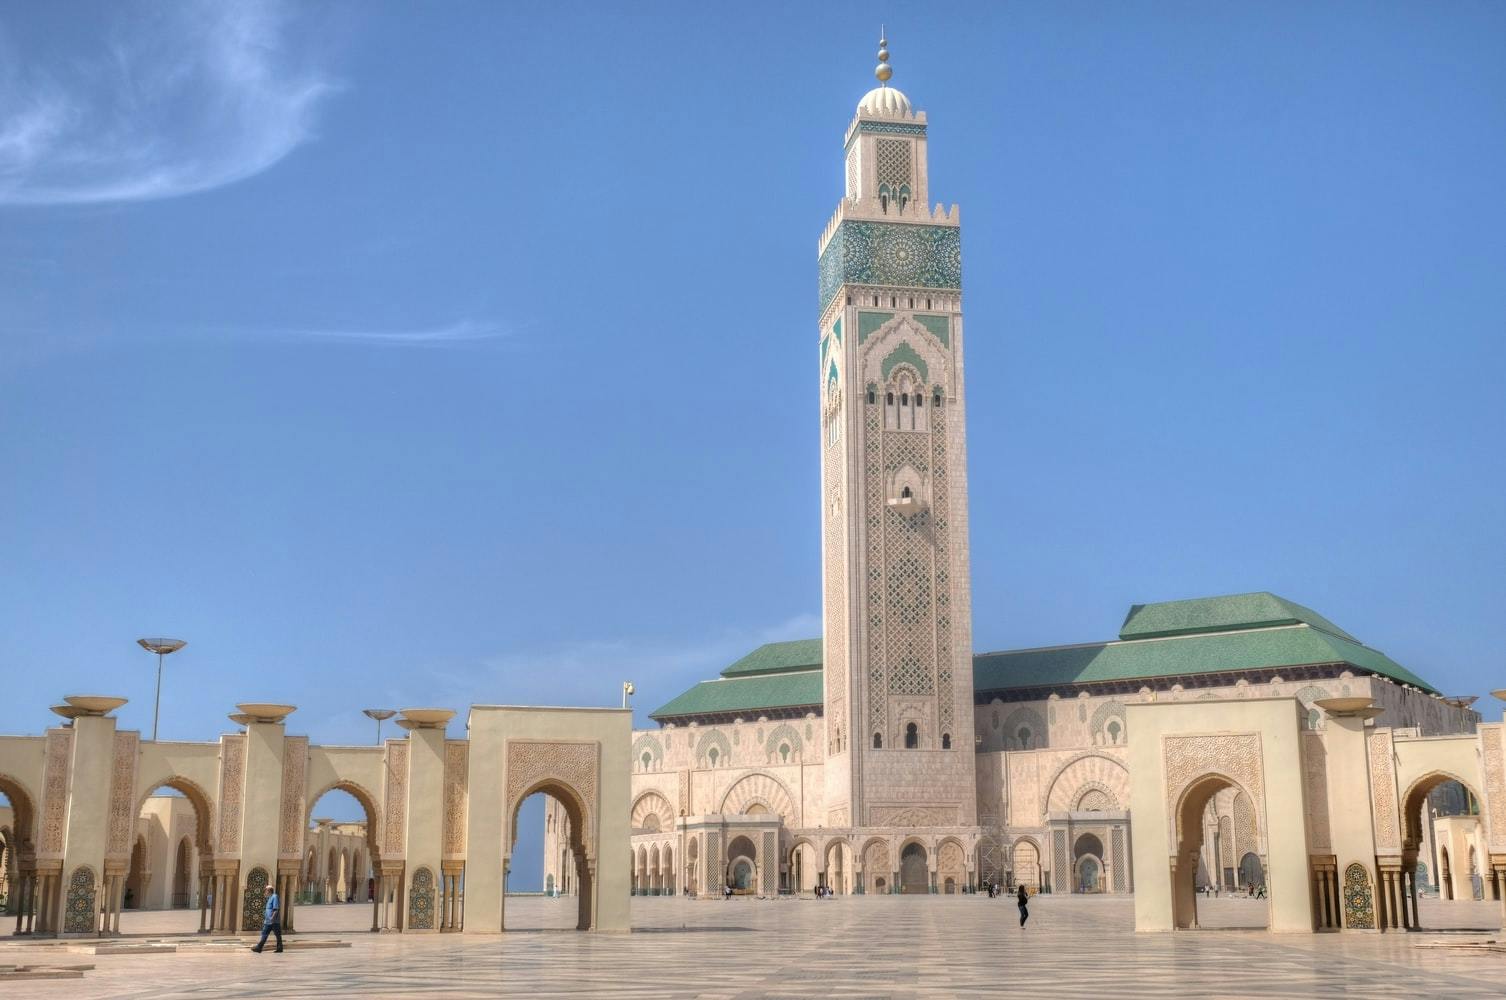 8-dniowa prywatna wycieczka z Casablanki do Marrakeszu przez Saharę?